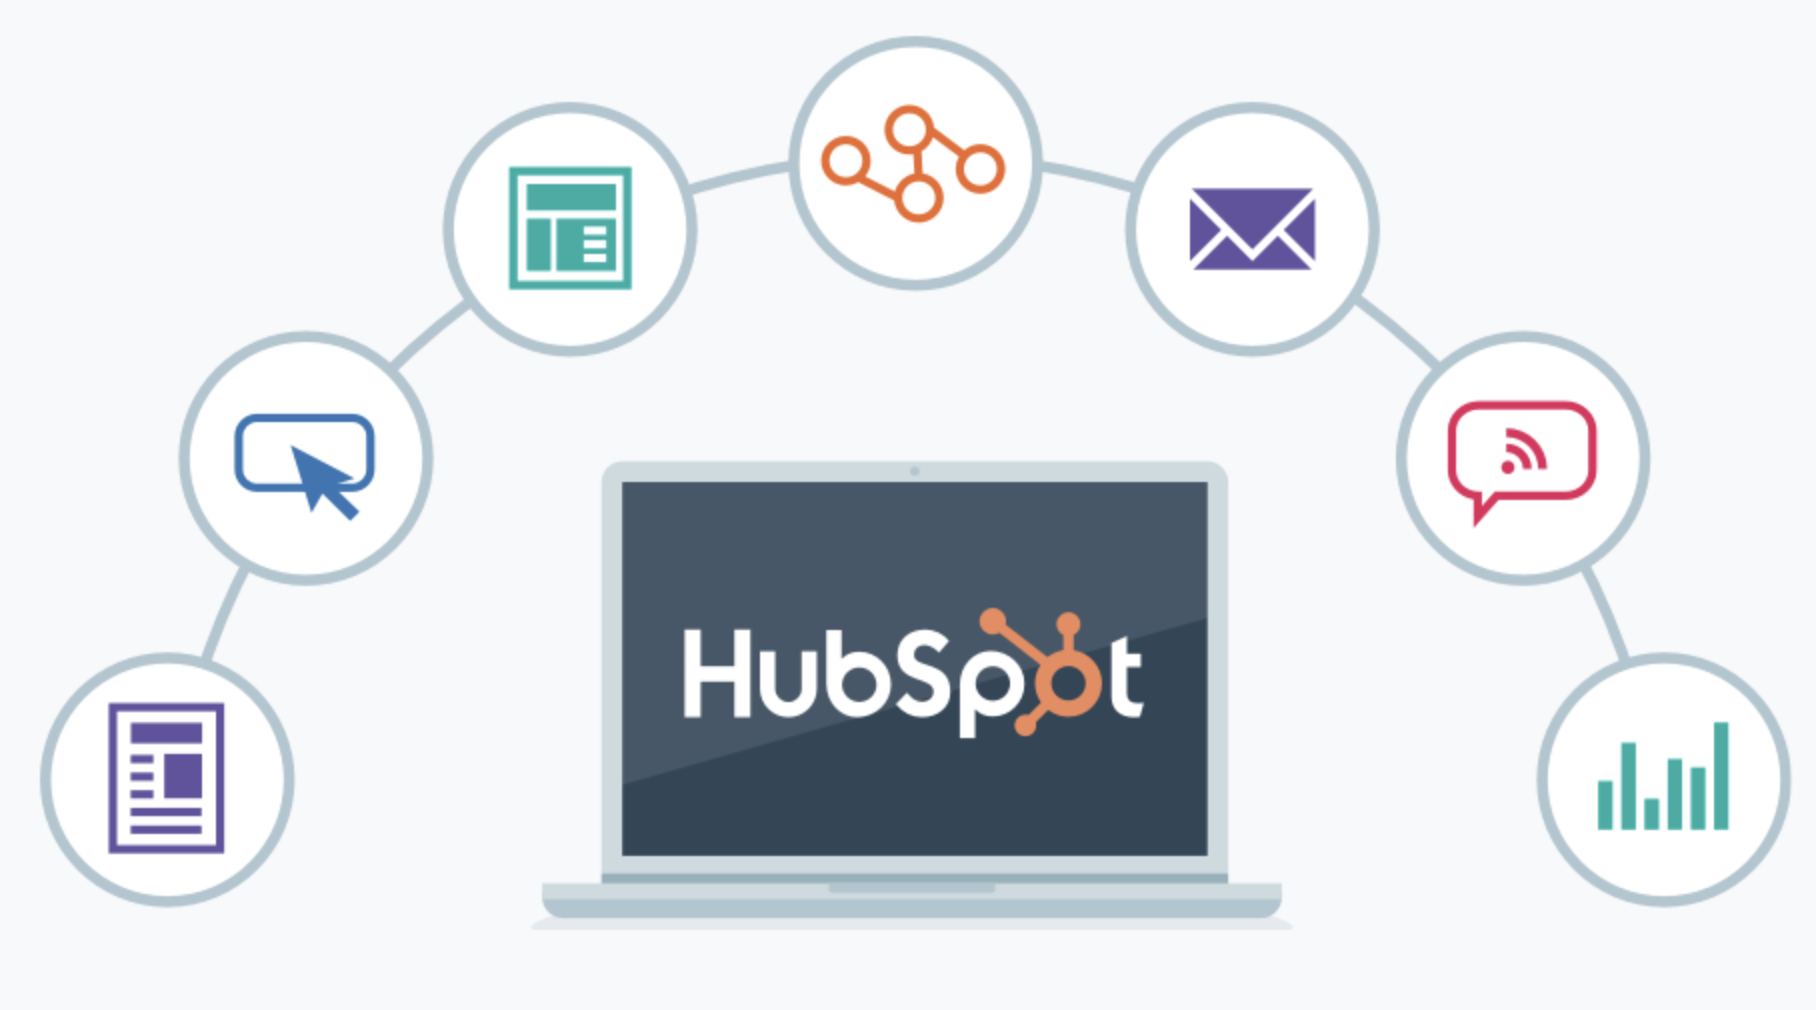 HubSpot tools